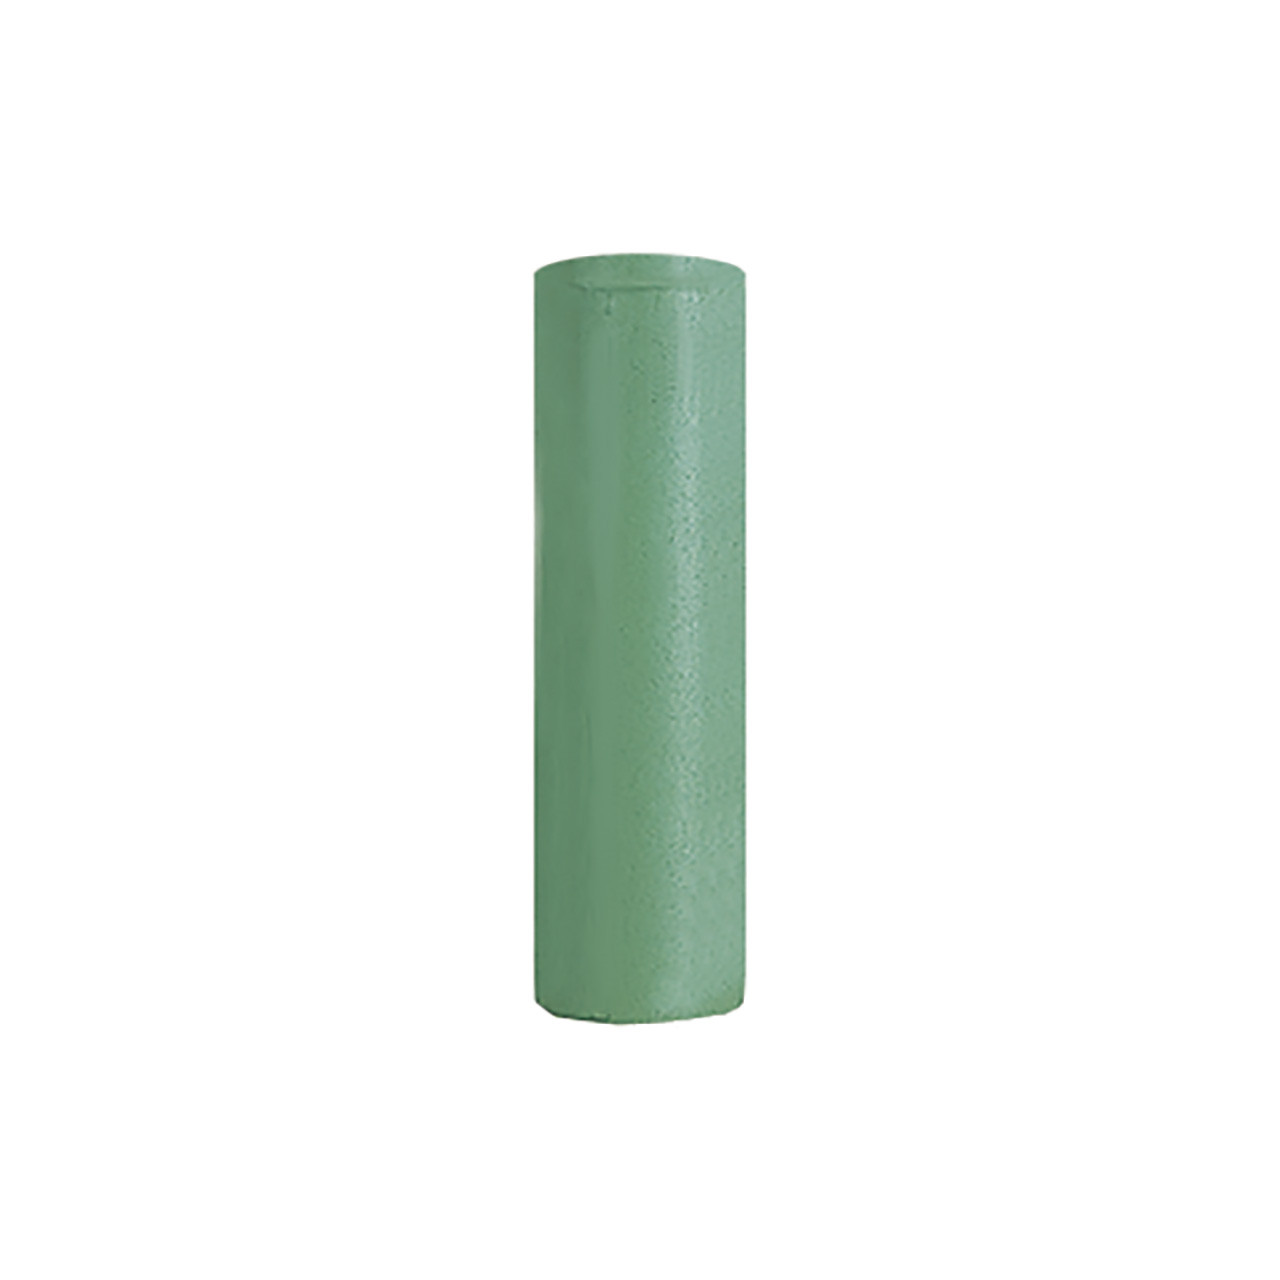 Edenta TopStar Polishers - Green Cylinder (Pkg. of 10)